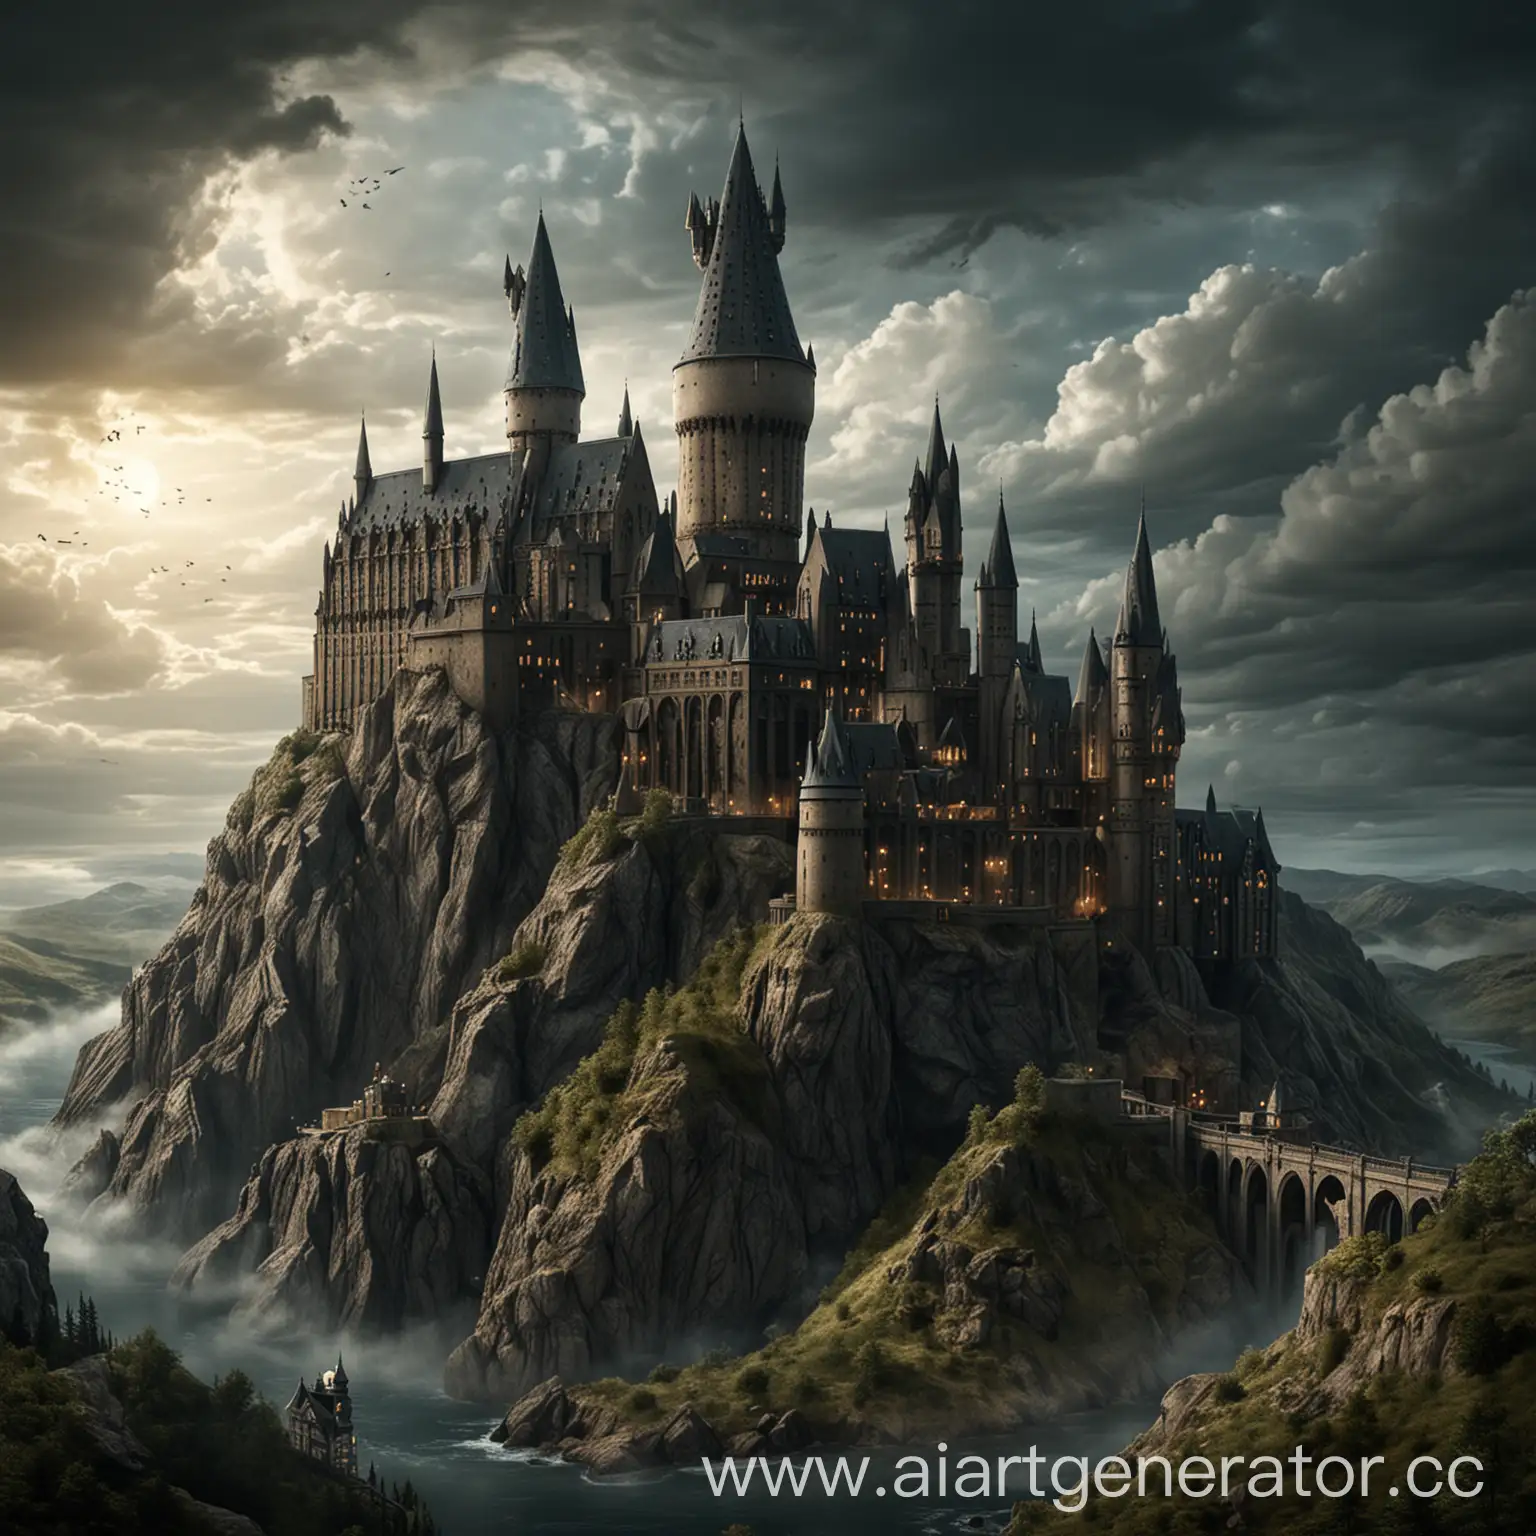 Magical-Hogwarts-Castle-Illuminated-at-Night